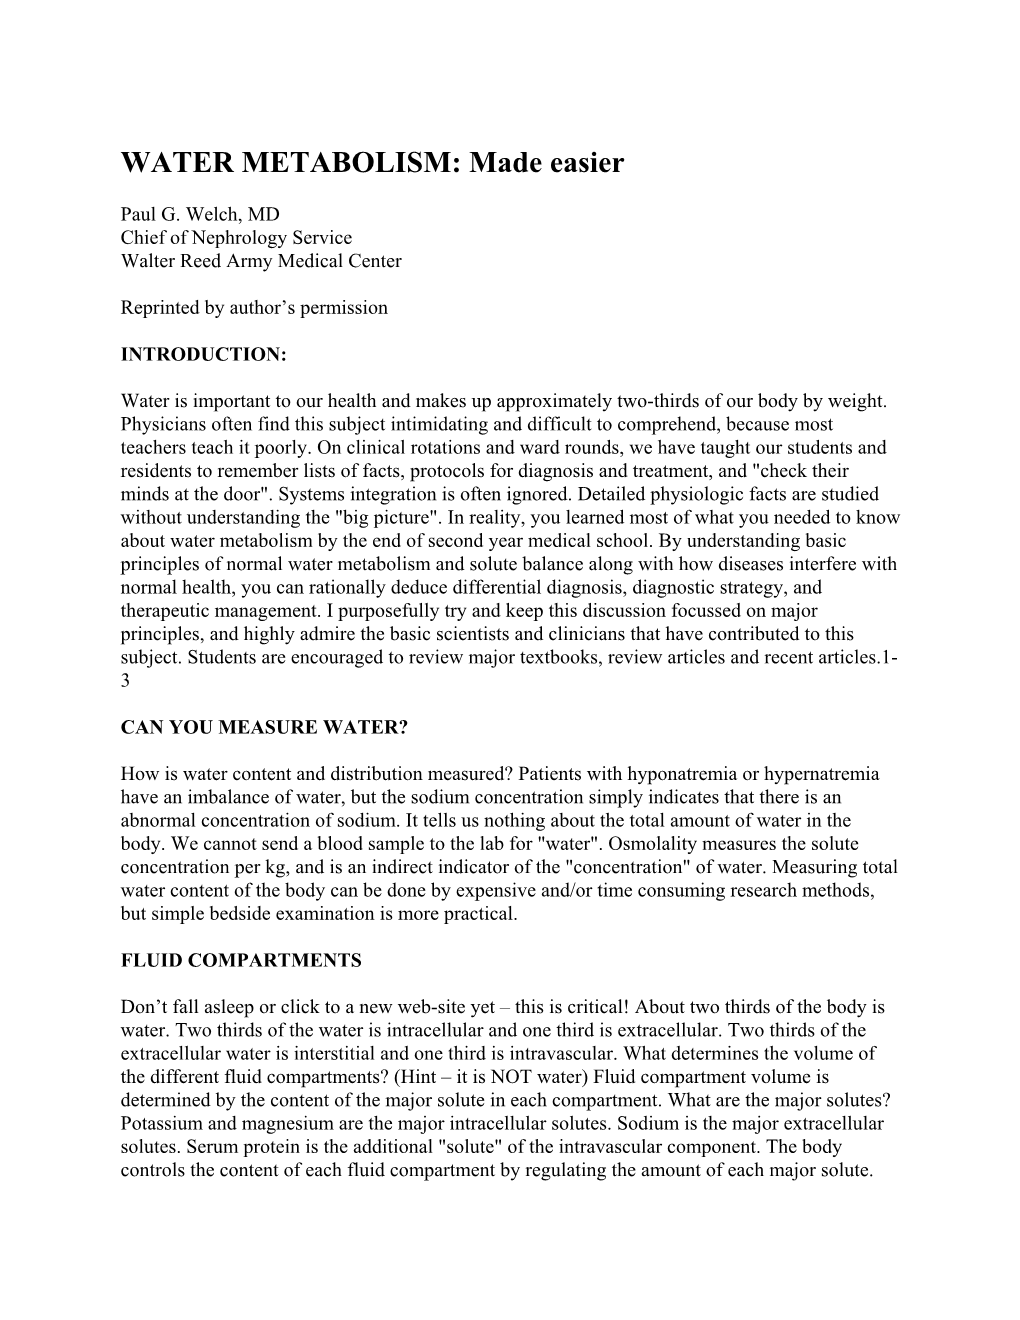 WATER METABOLISM: Made Easier